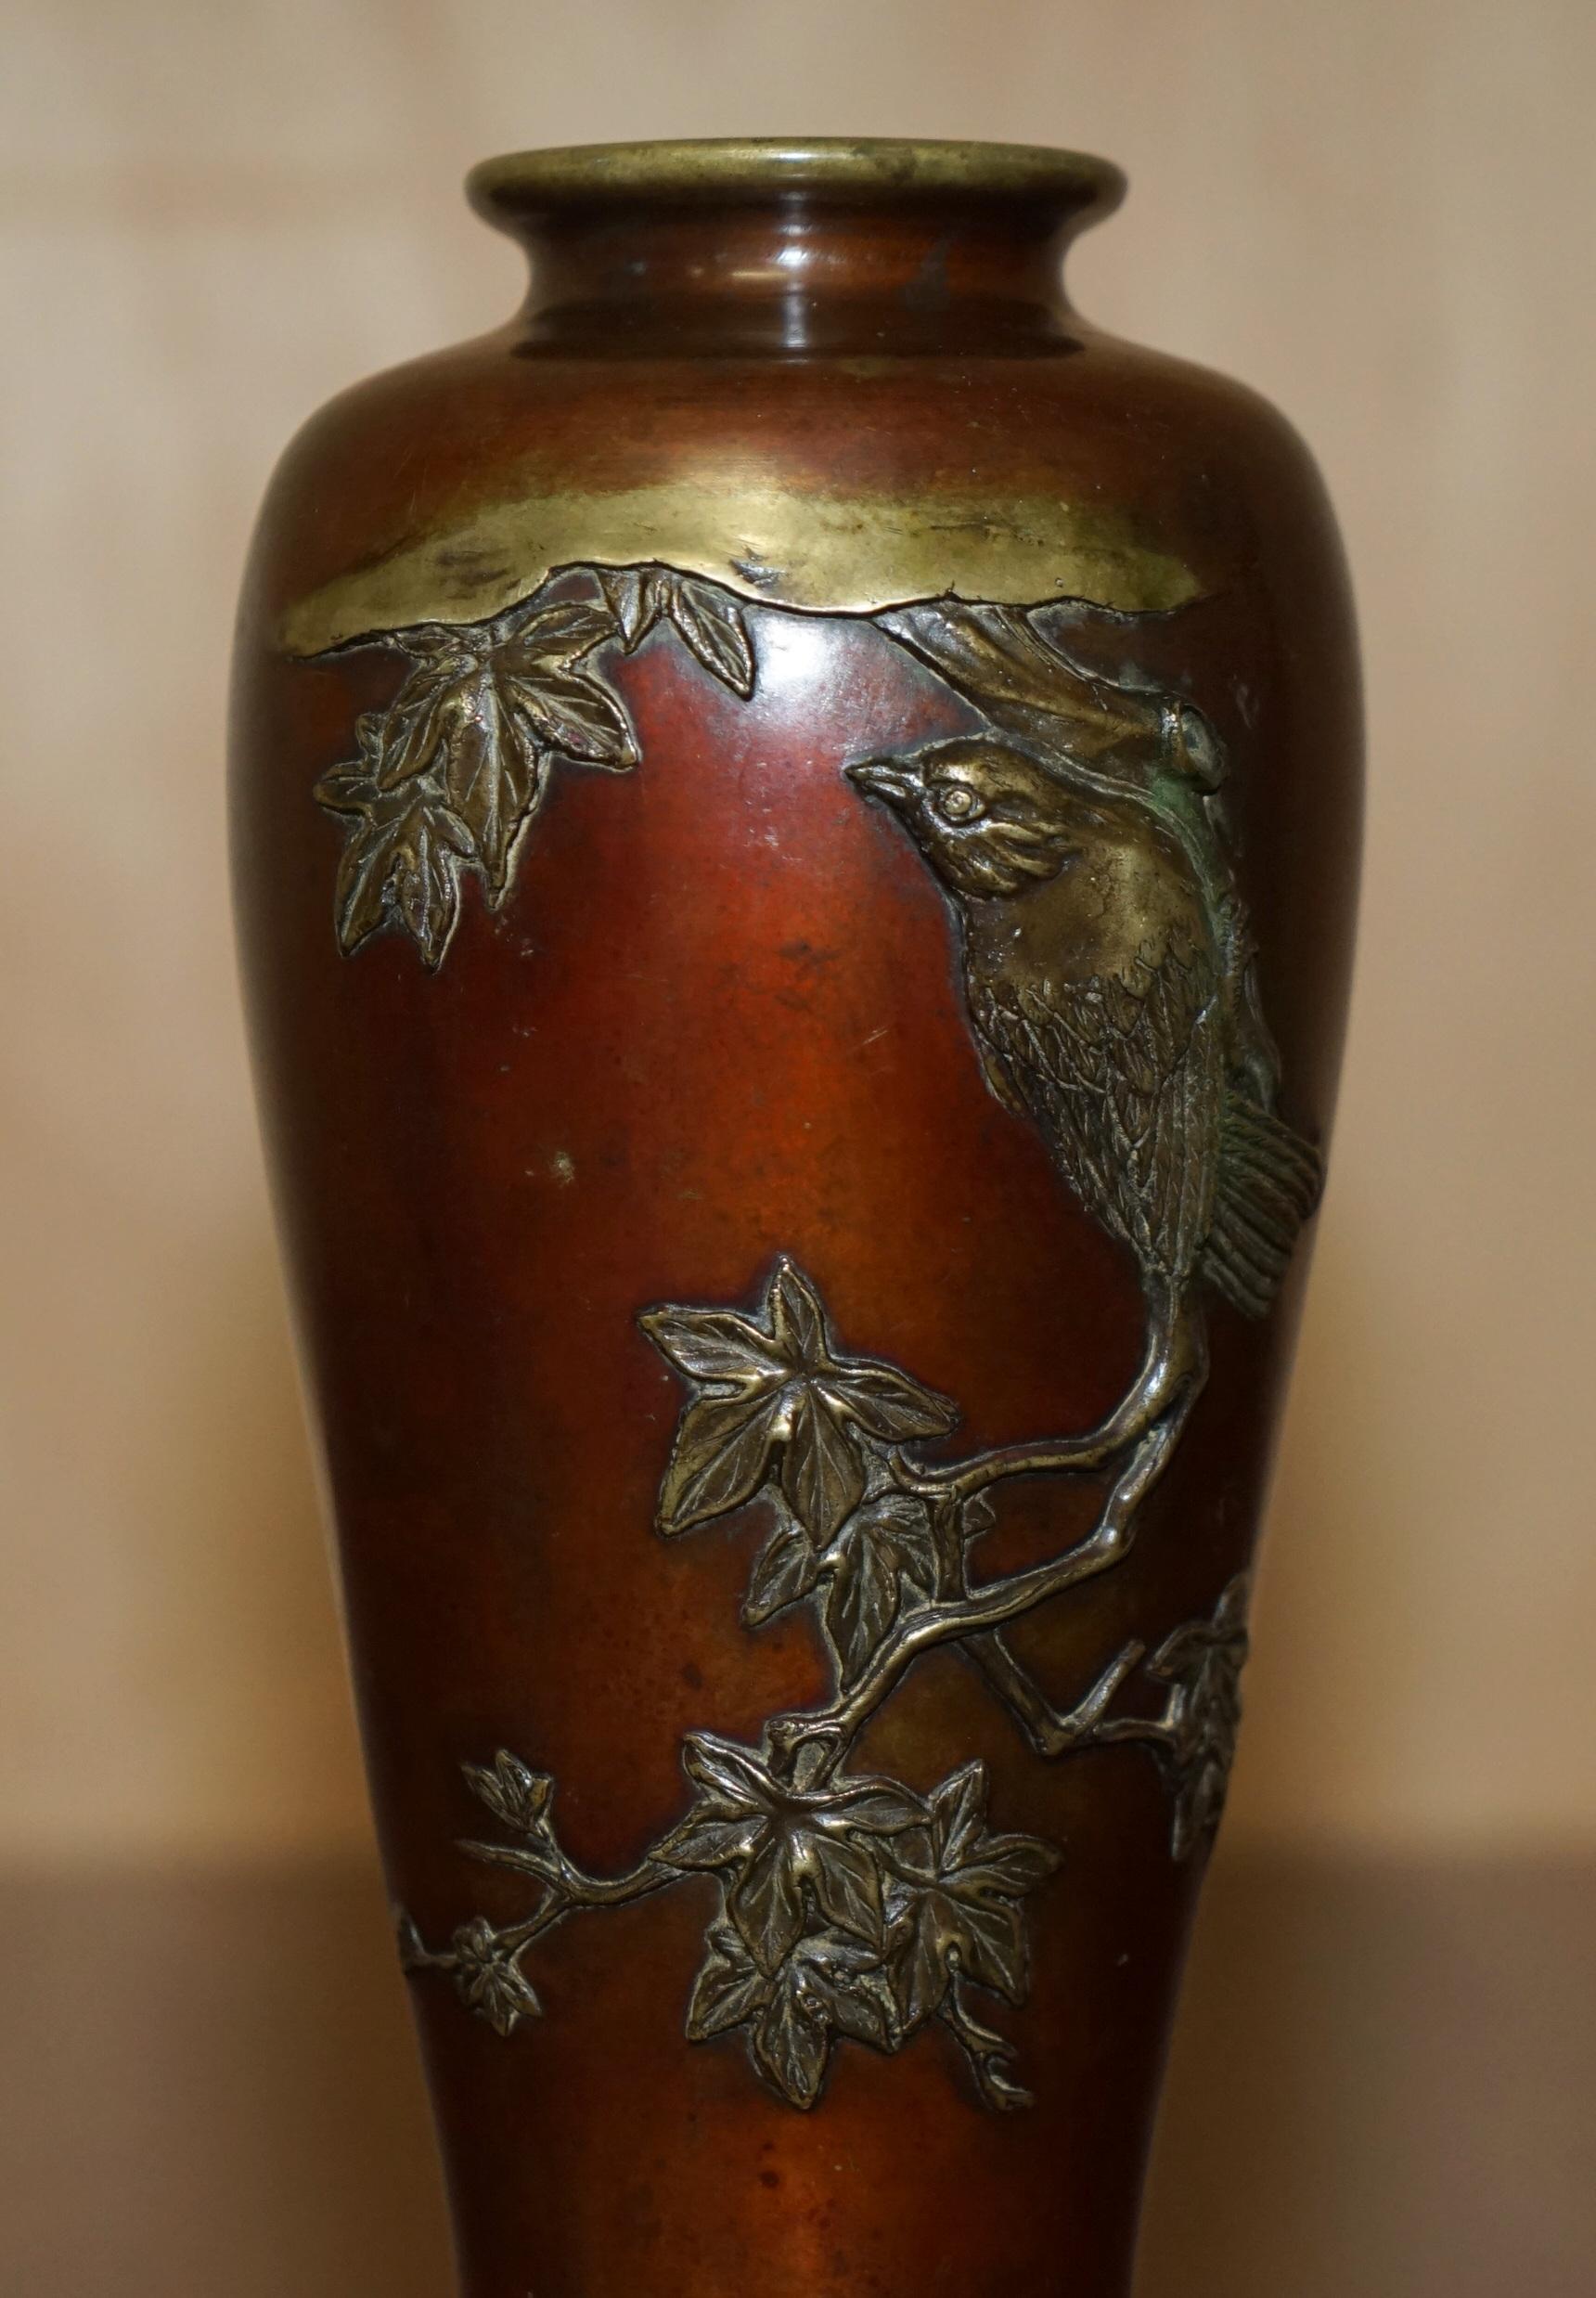 Royal House Antiques

The House Antiques a le plaisir de proposer à la vente ce superbe vase japonais en bronze massif, datant de 1870 et signé sur la base, représentant un grand oiseau sur une branche.

Une trouvaille merveilleusement originale, il